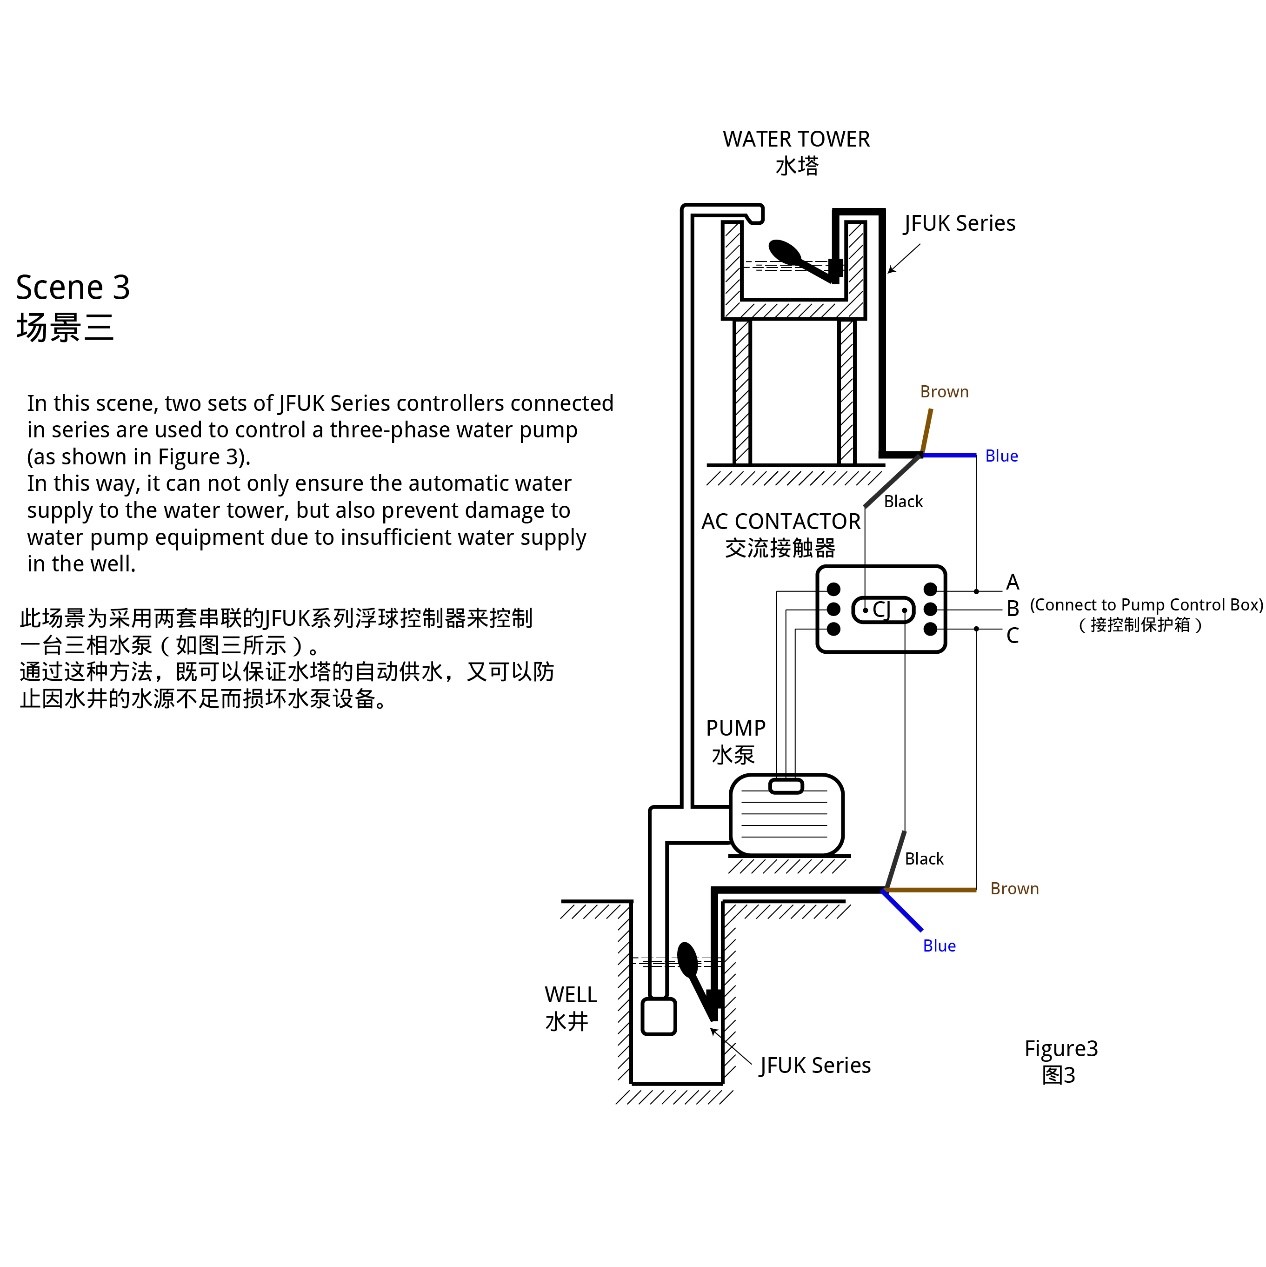 JFUK series wiring diagram1 stage3